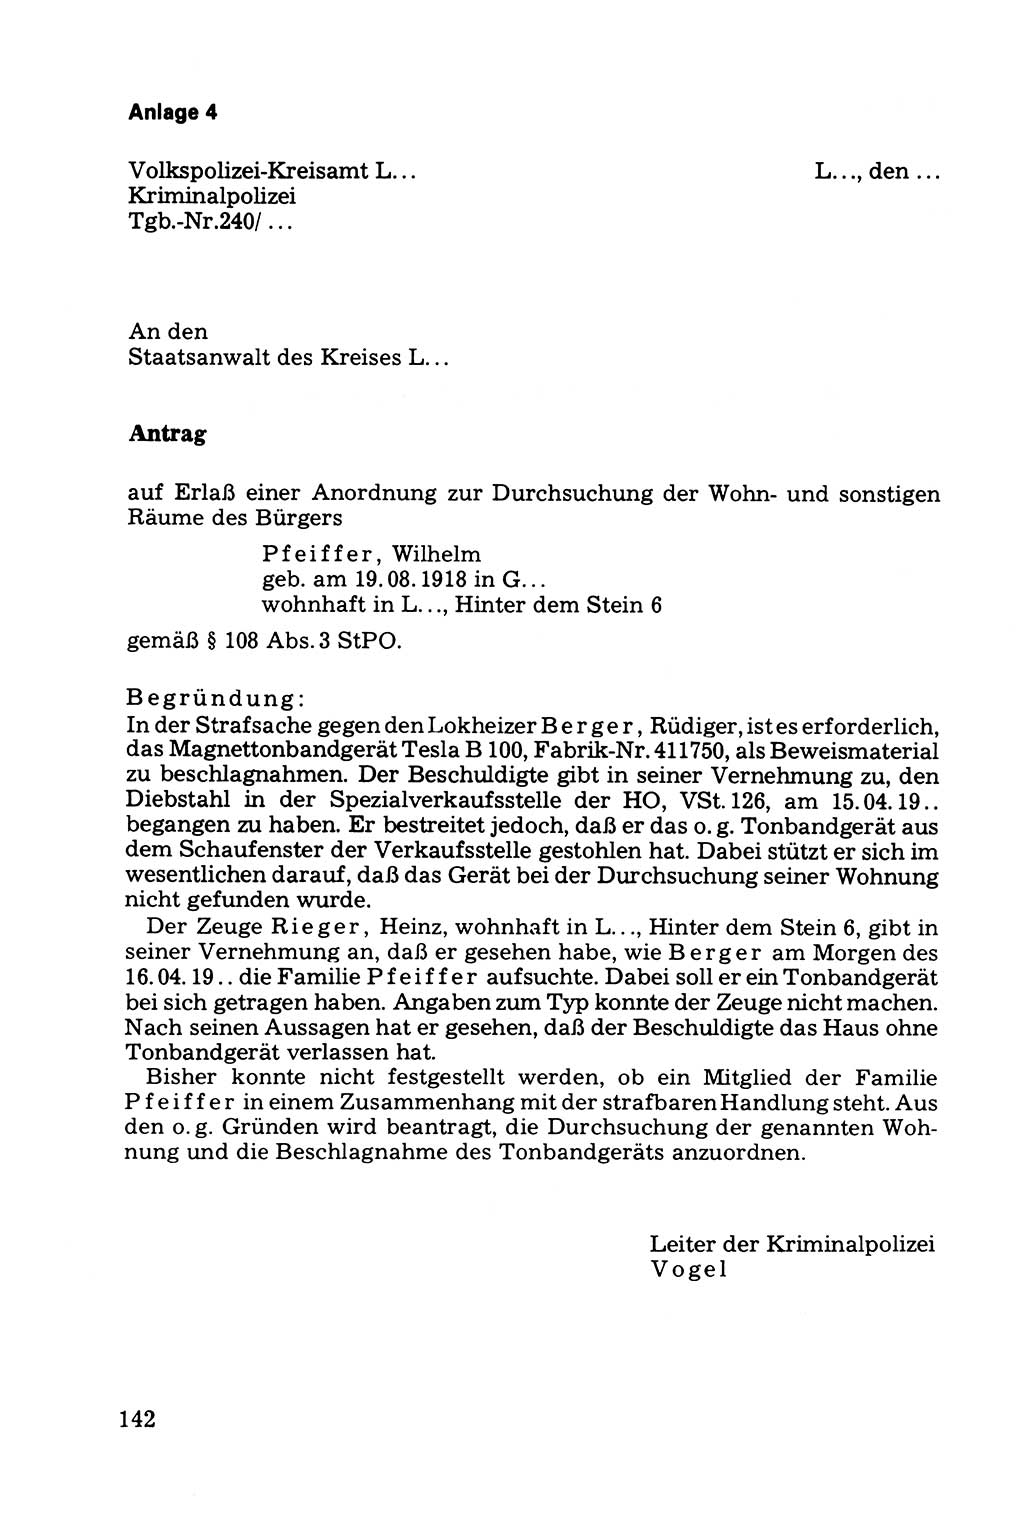 Die Durchsuchung und die Beschlagnahme [Deutsche Demokratische Republik (DDR)] 1979, Seite 142 (Durchs. Beschl. DDR 1979, S. 142)